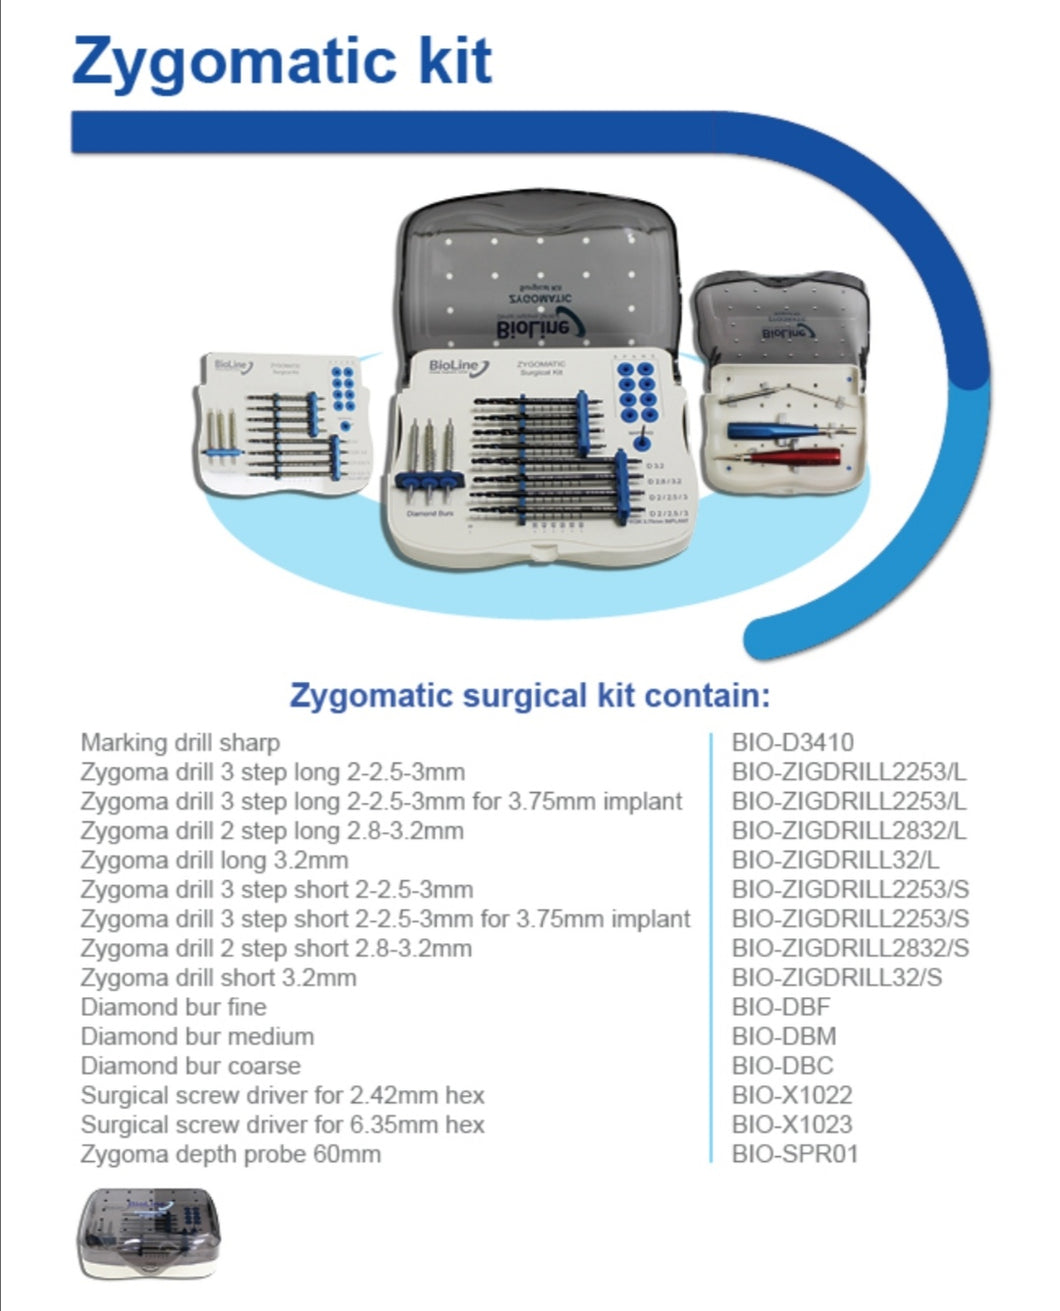 Zygomatic surgical Kit